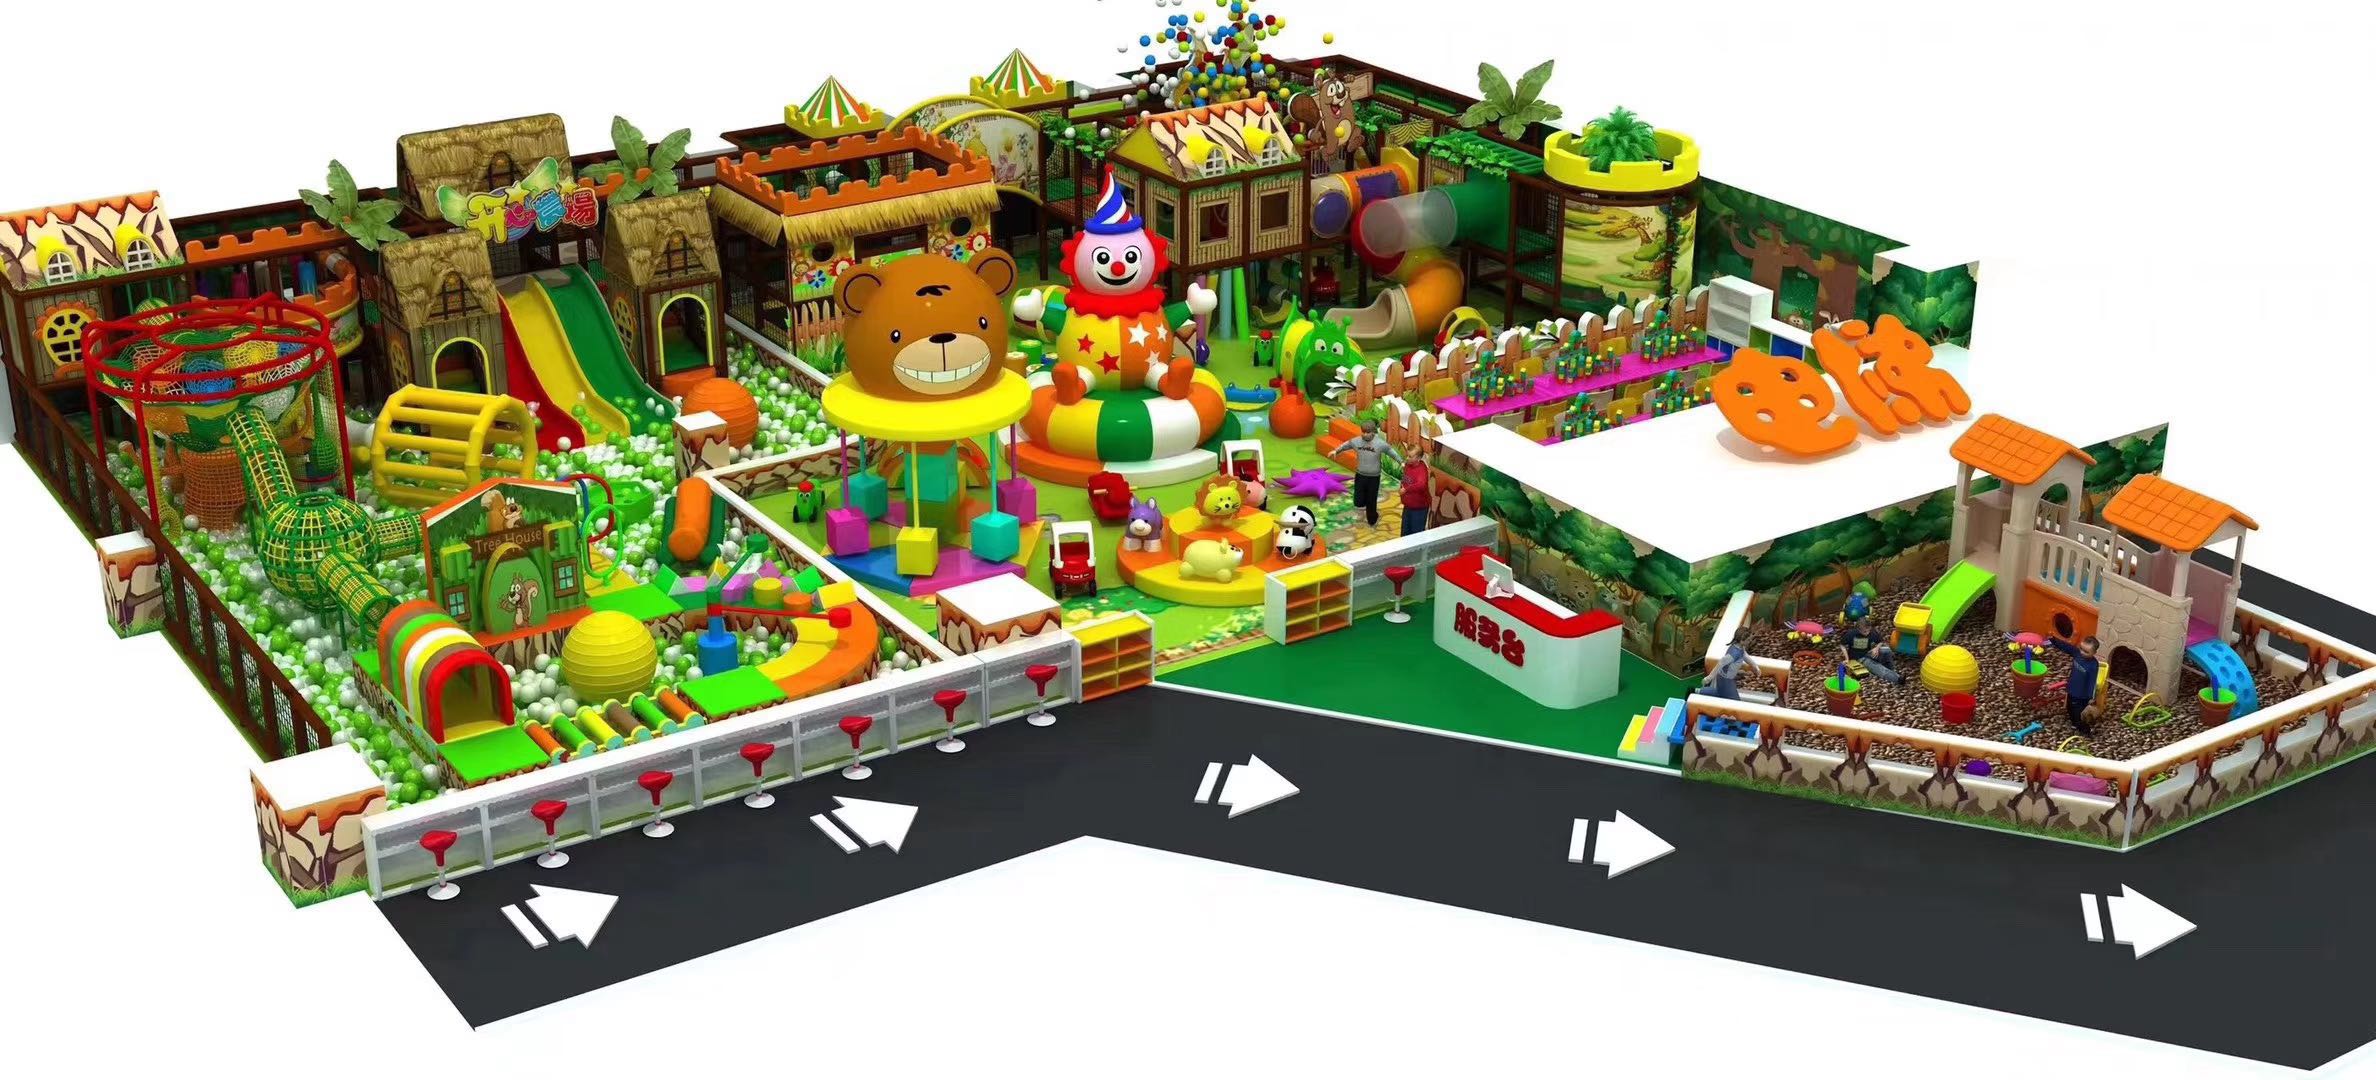 淘气堡儿童乐园设施室内儿童乐园游乐场设备大型拓展